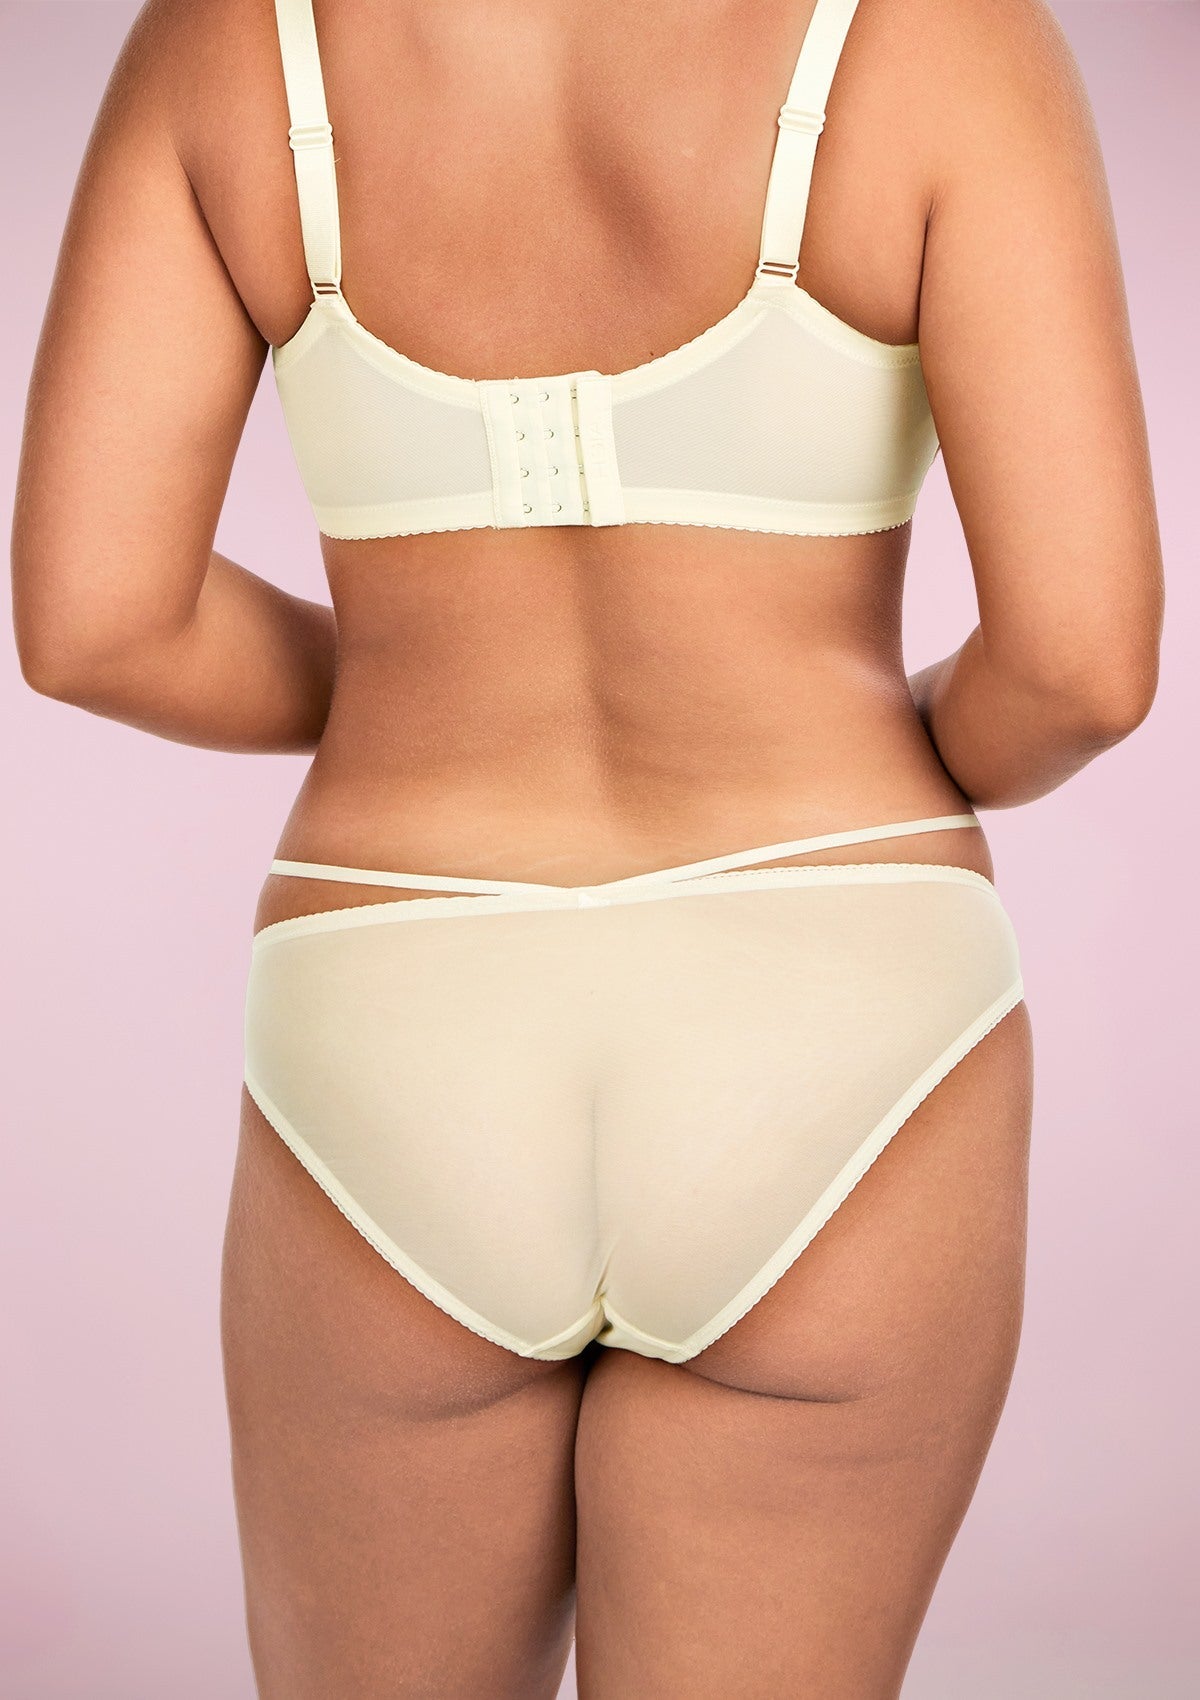 HSIA Breathable Sexy Feminine Lace Mesh Bikini Underwear - S / Champagne